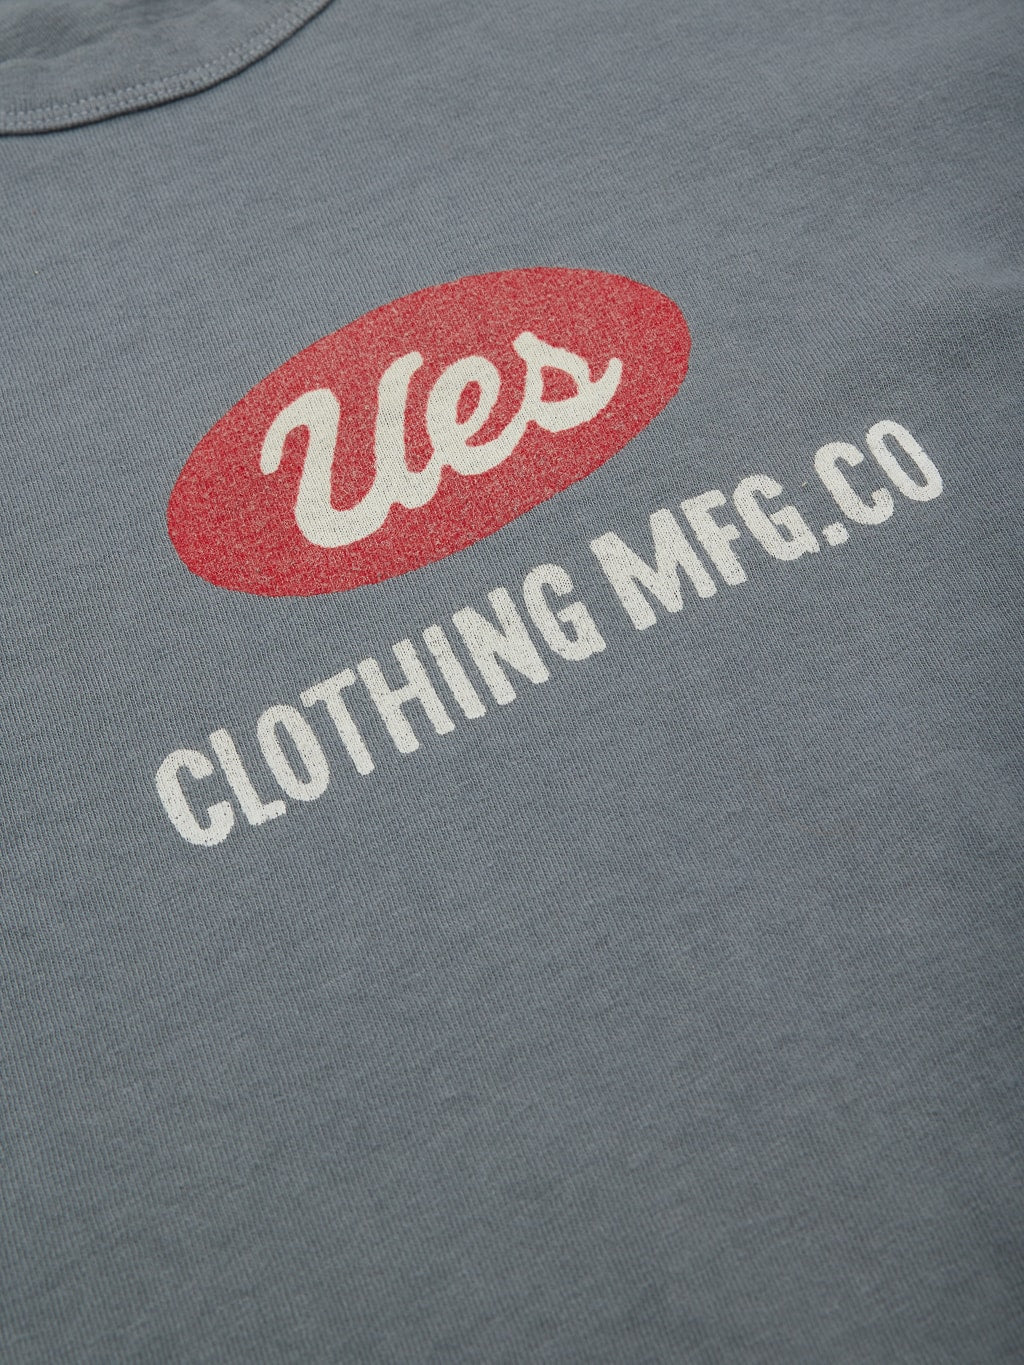 ues logo tshirt grey slim fit vintage print closeup